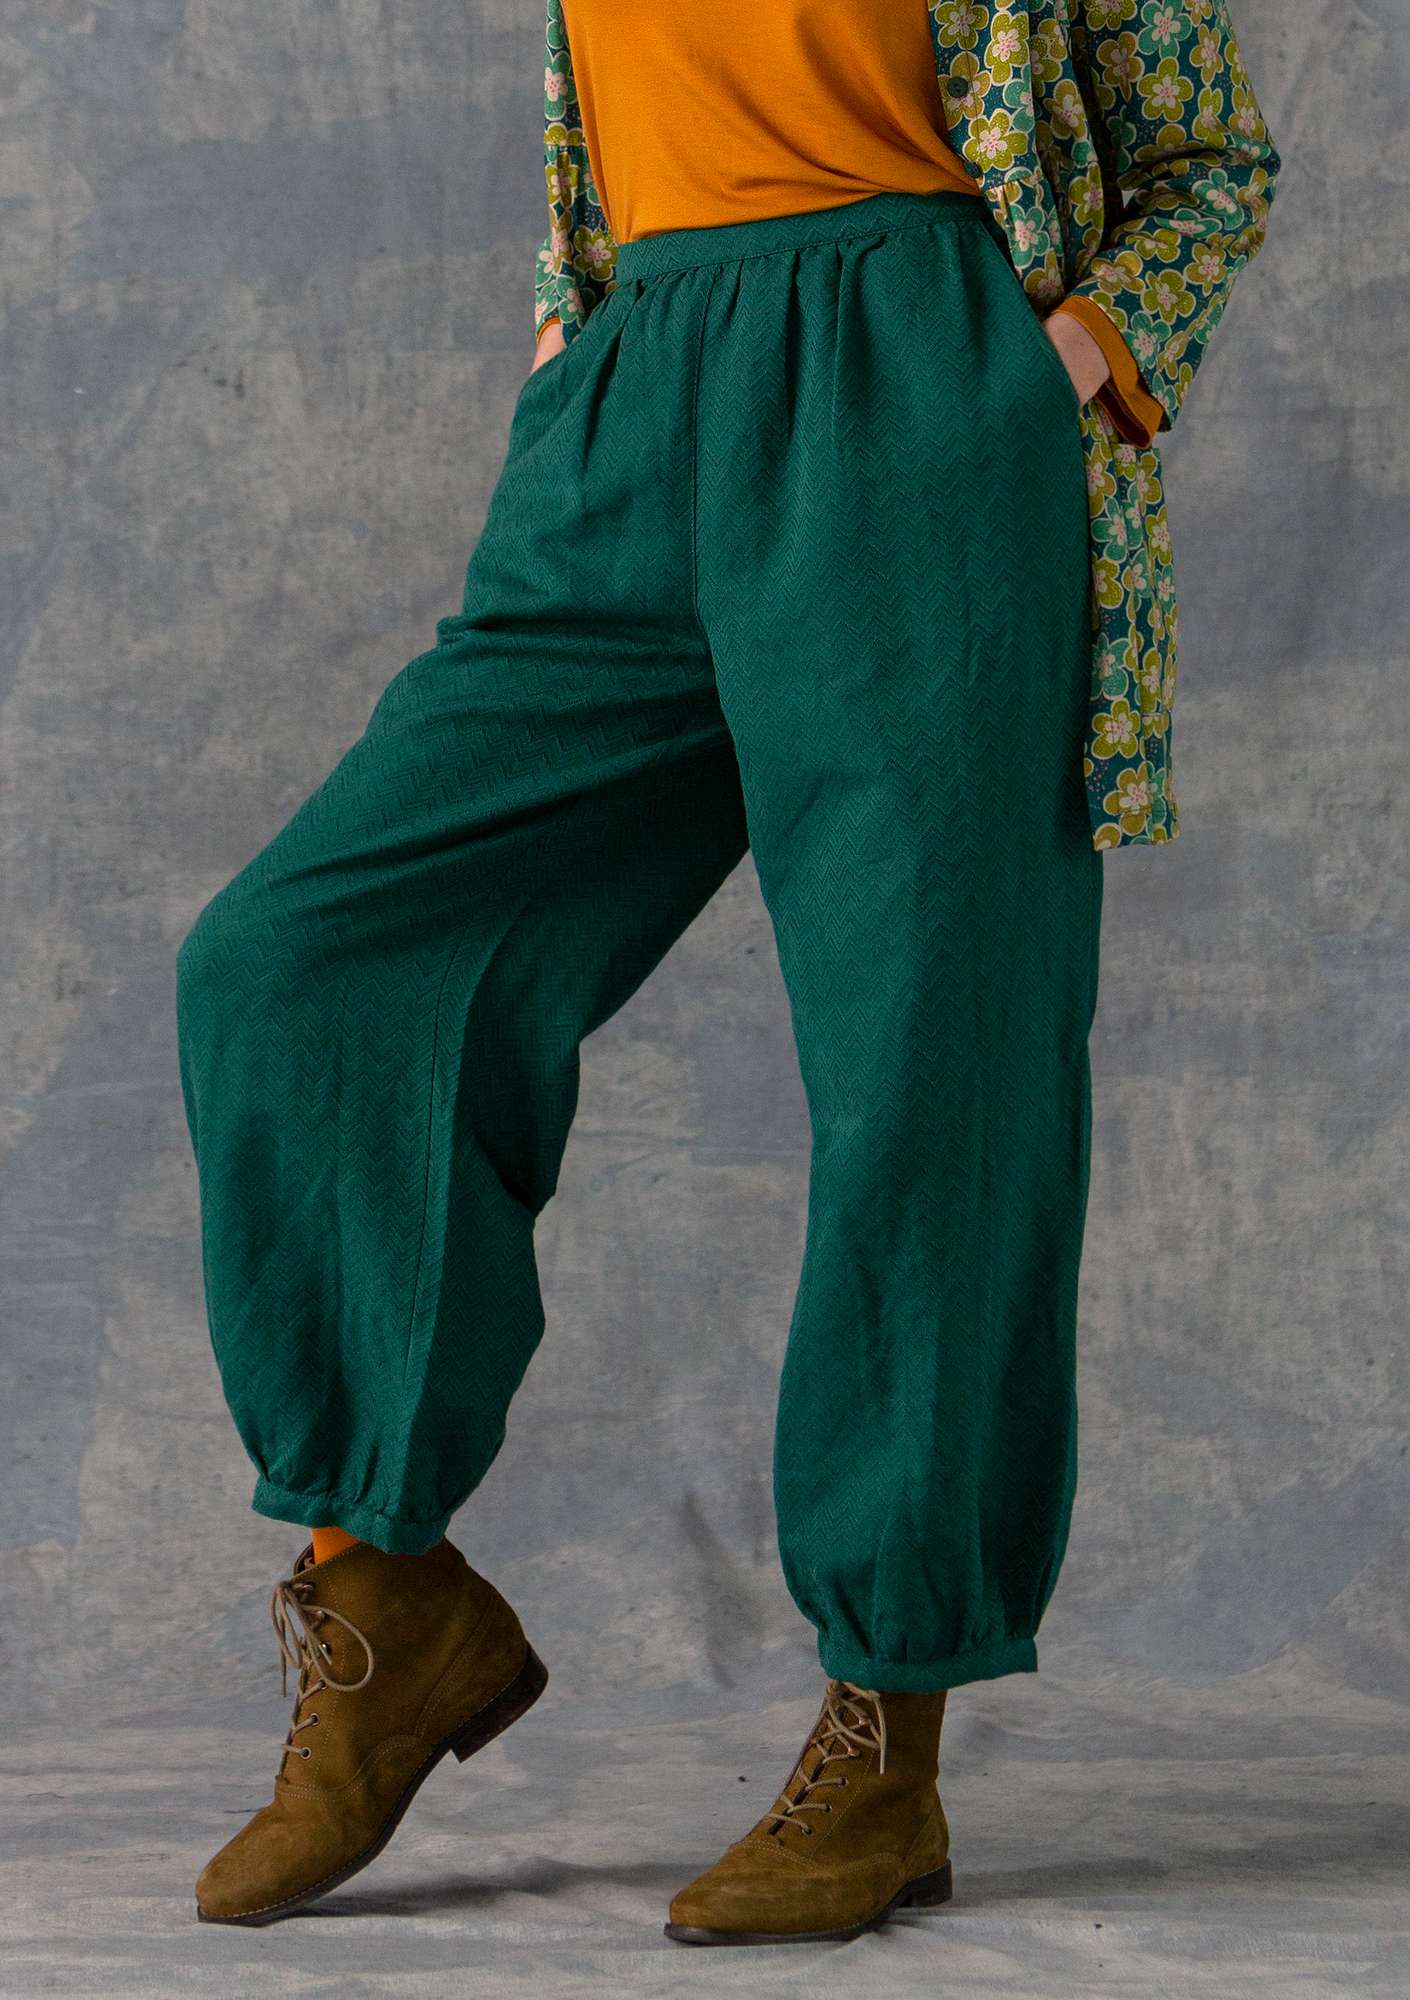 Vevd bukse i bomull/lin påfuglgrønn